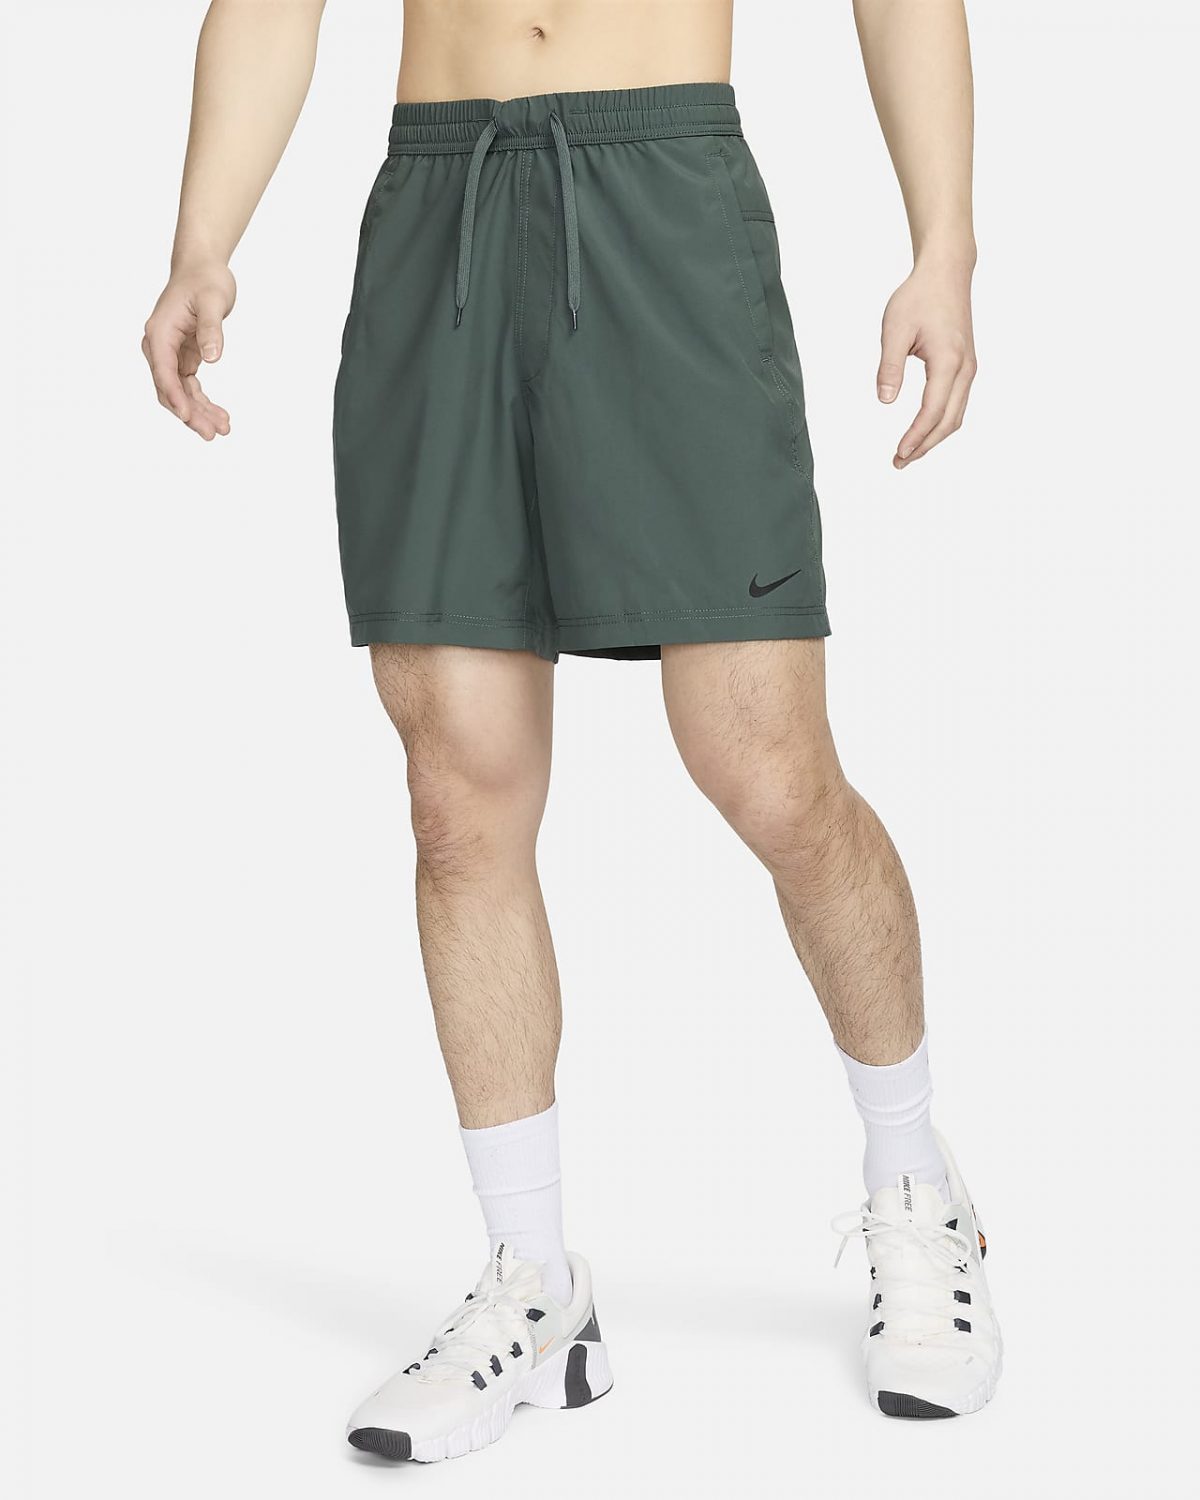 Мужские шорты Nike Dri-FIT Form черные фото